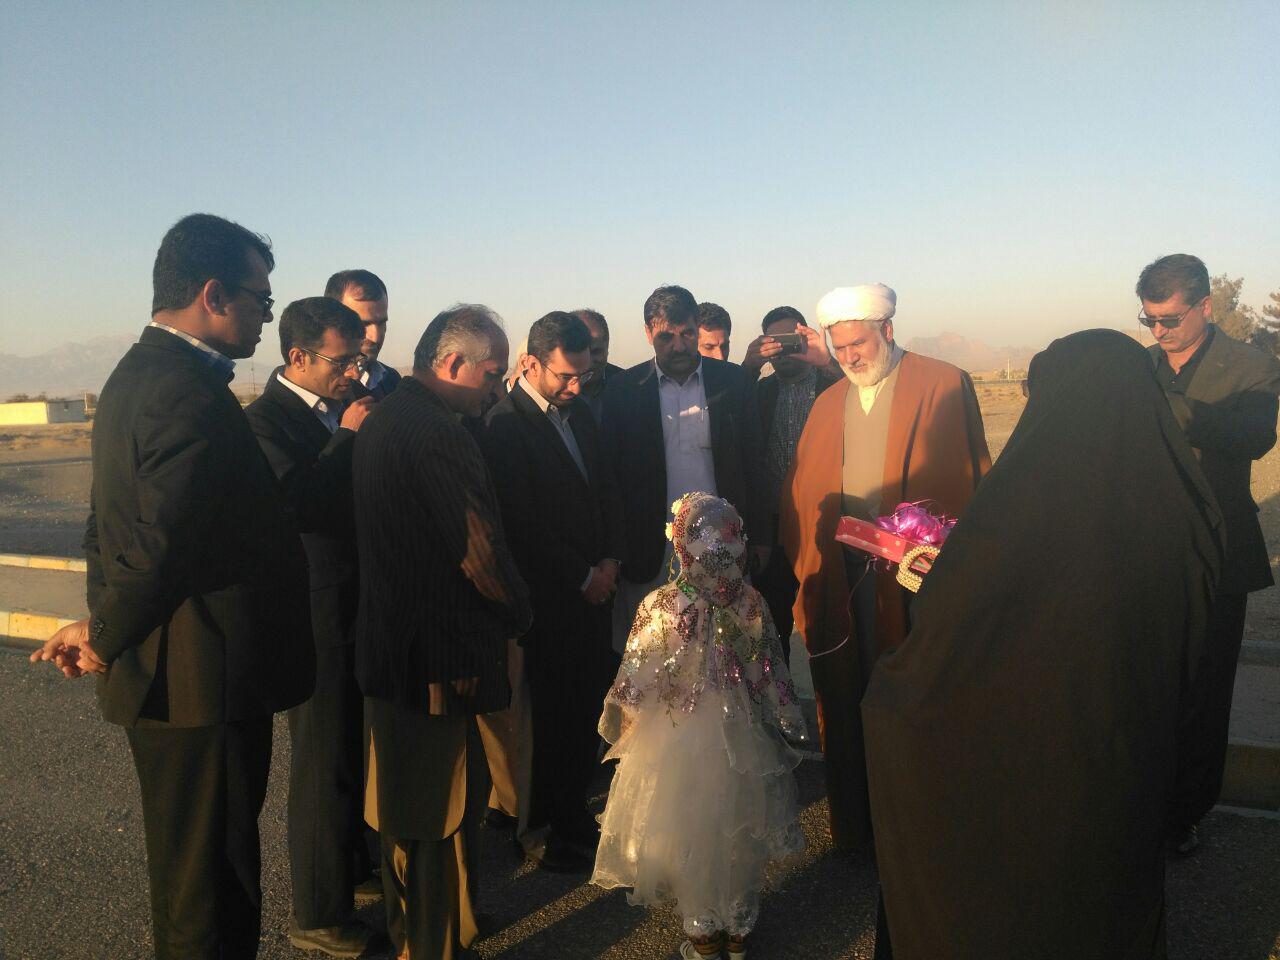 محمدجواد آذری جهرمی وزير ارتباطات و فناوري به شهرستان خاش سفر كرد.